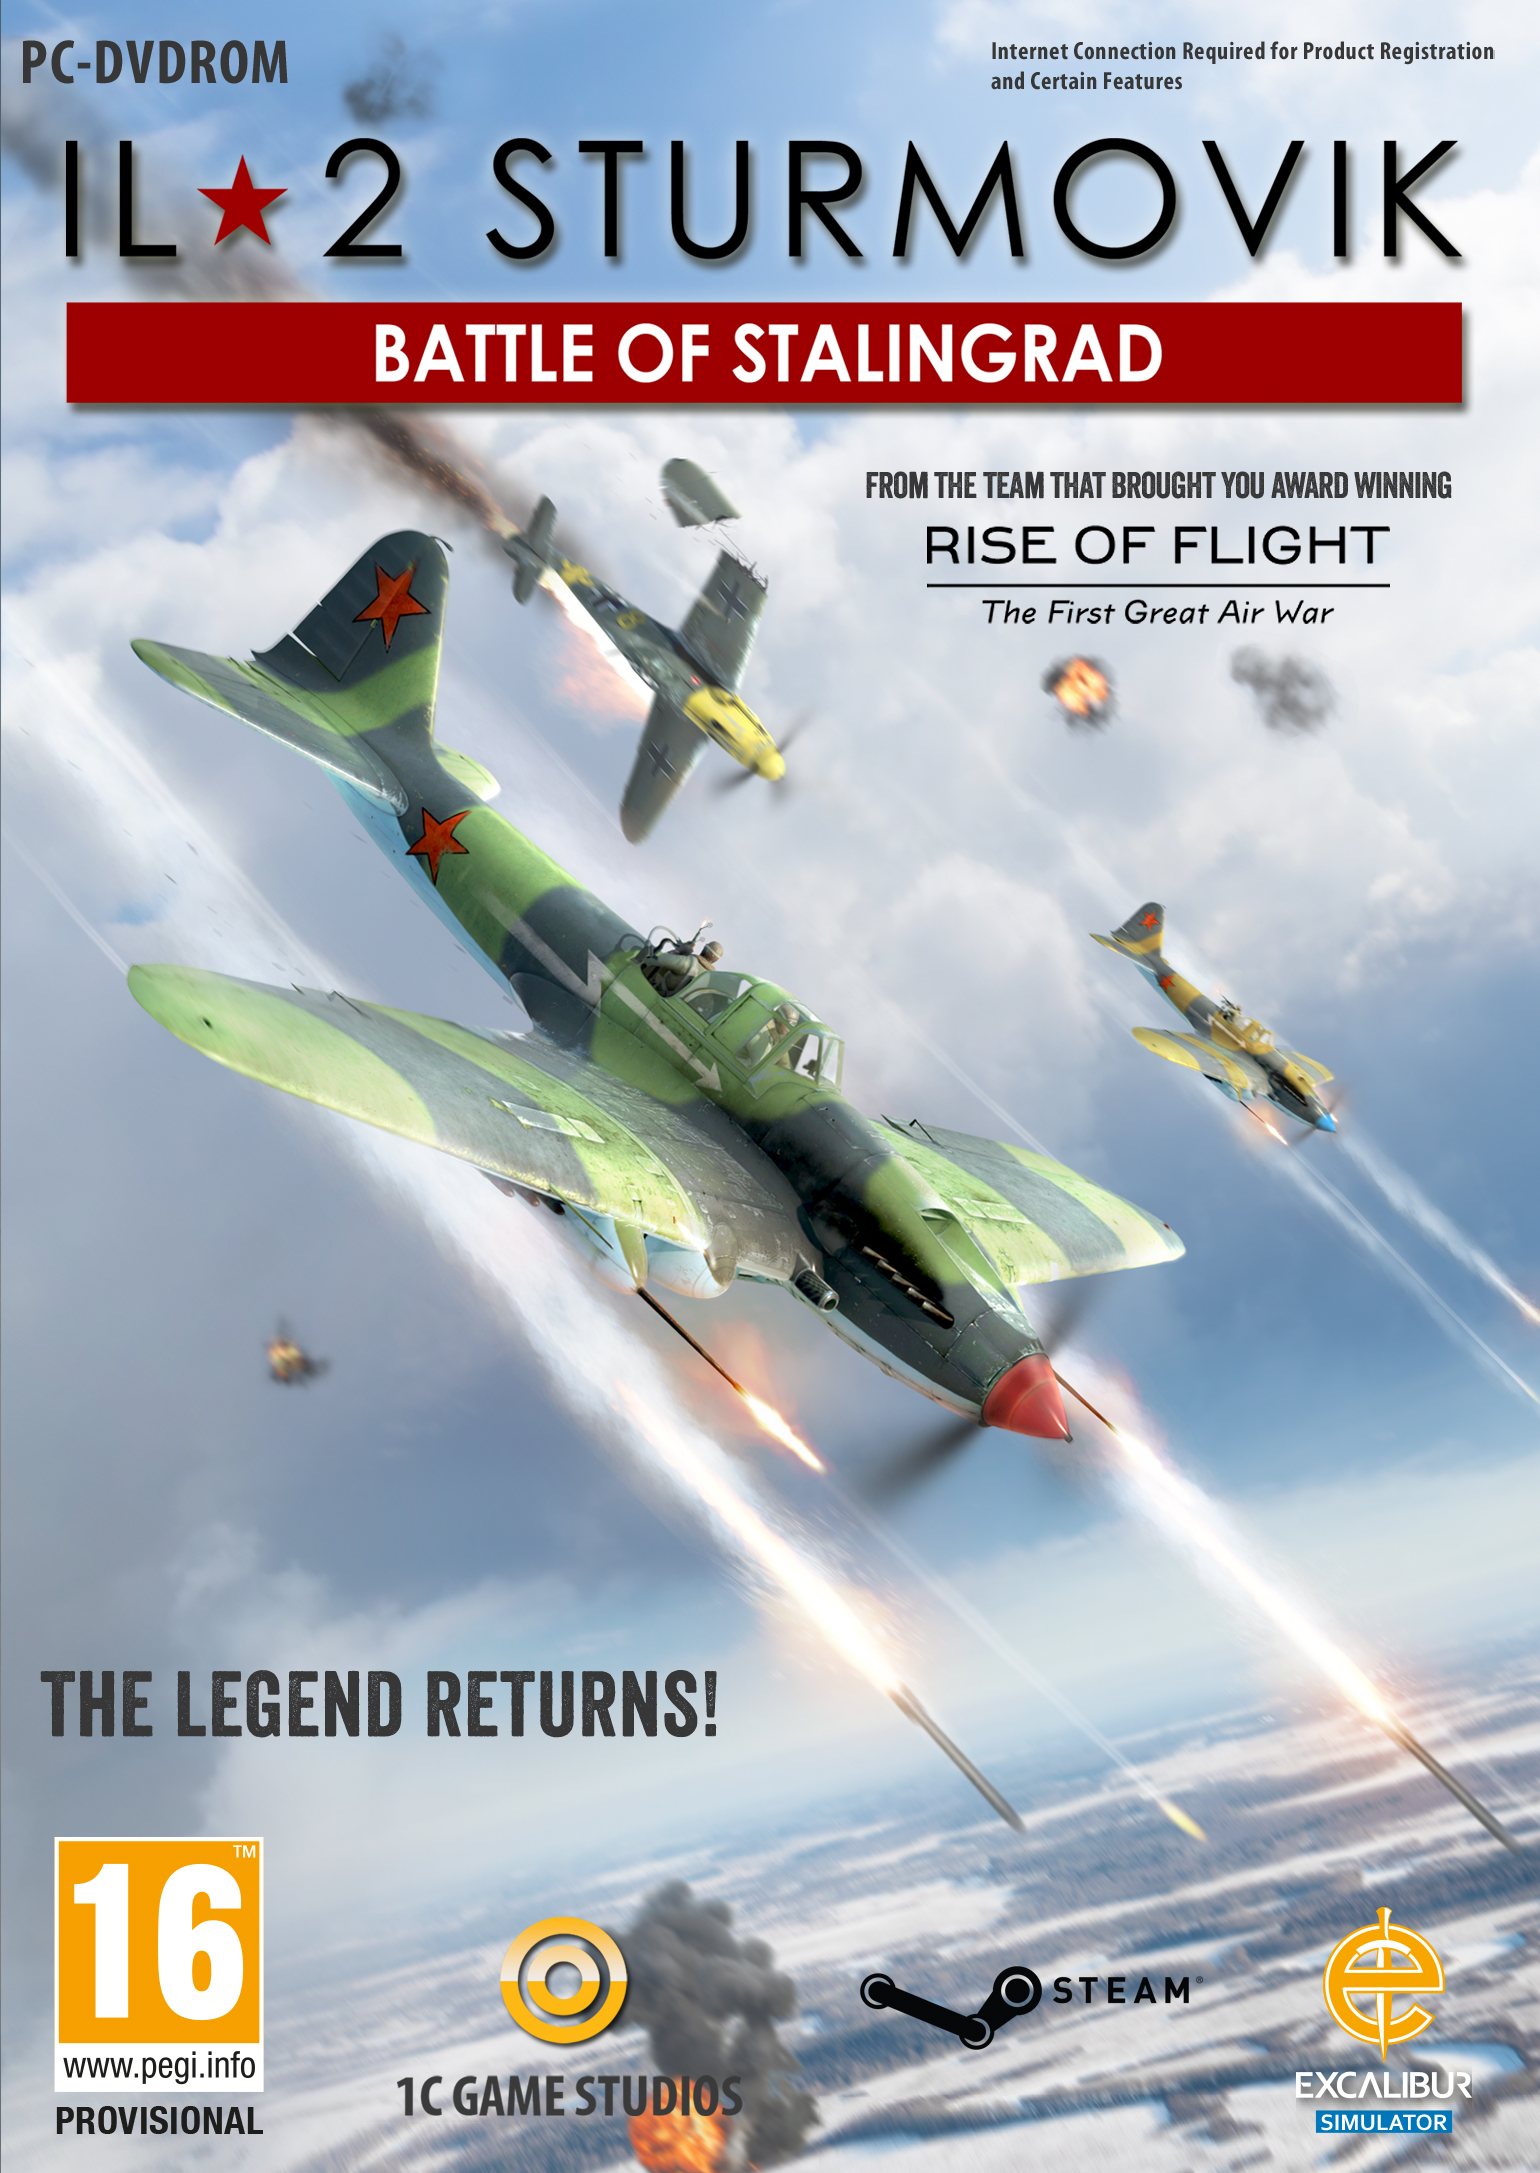 il-2 sturmovik battle of stalingrad swastika mod